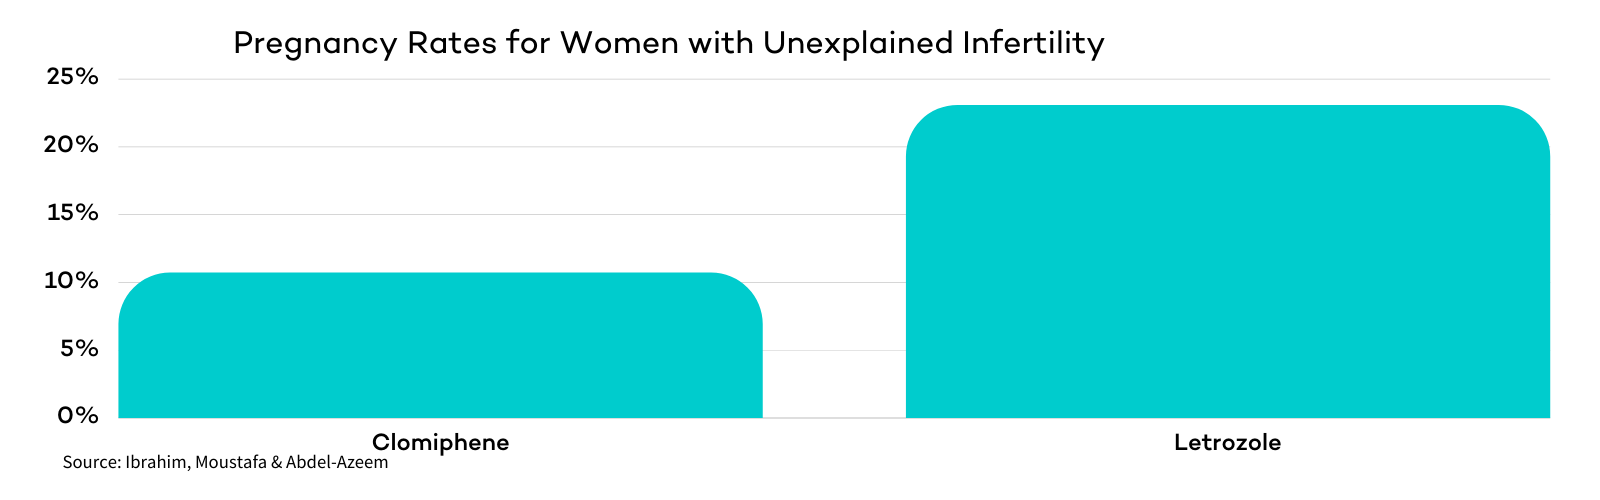 Letrozole advantage over Clomiphene for Unexplained Infertility